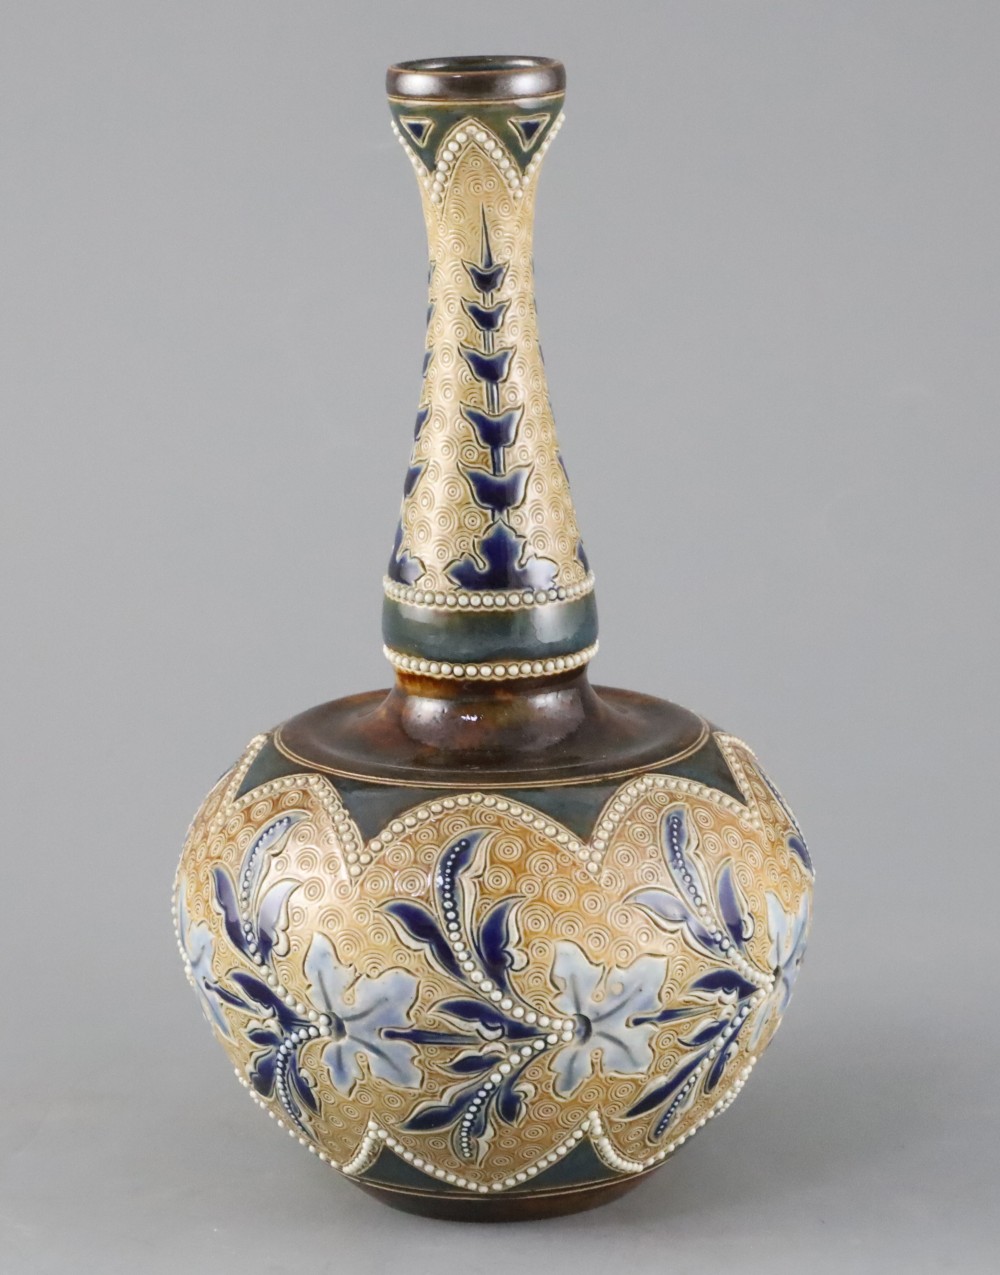 Emily E. Stormer for Doulton Lambeth, an Art Union of London bottle vase, c.1885, 20.5cm